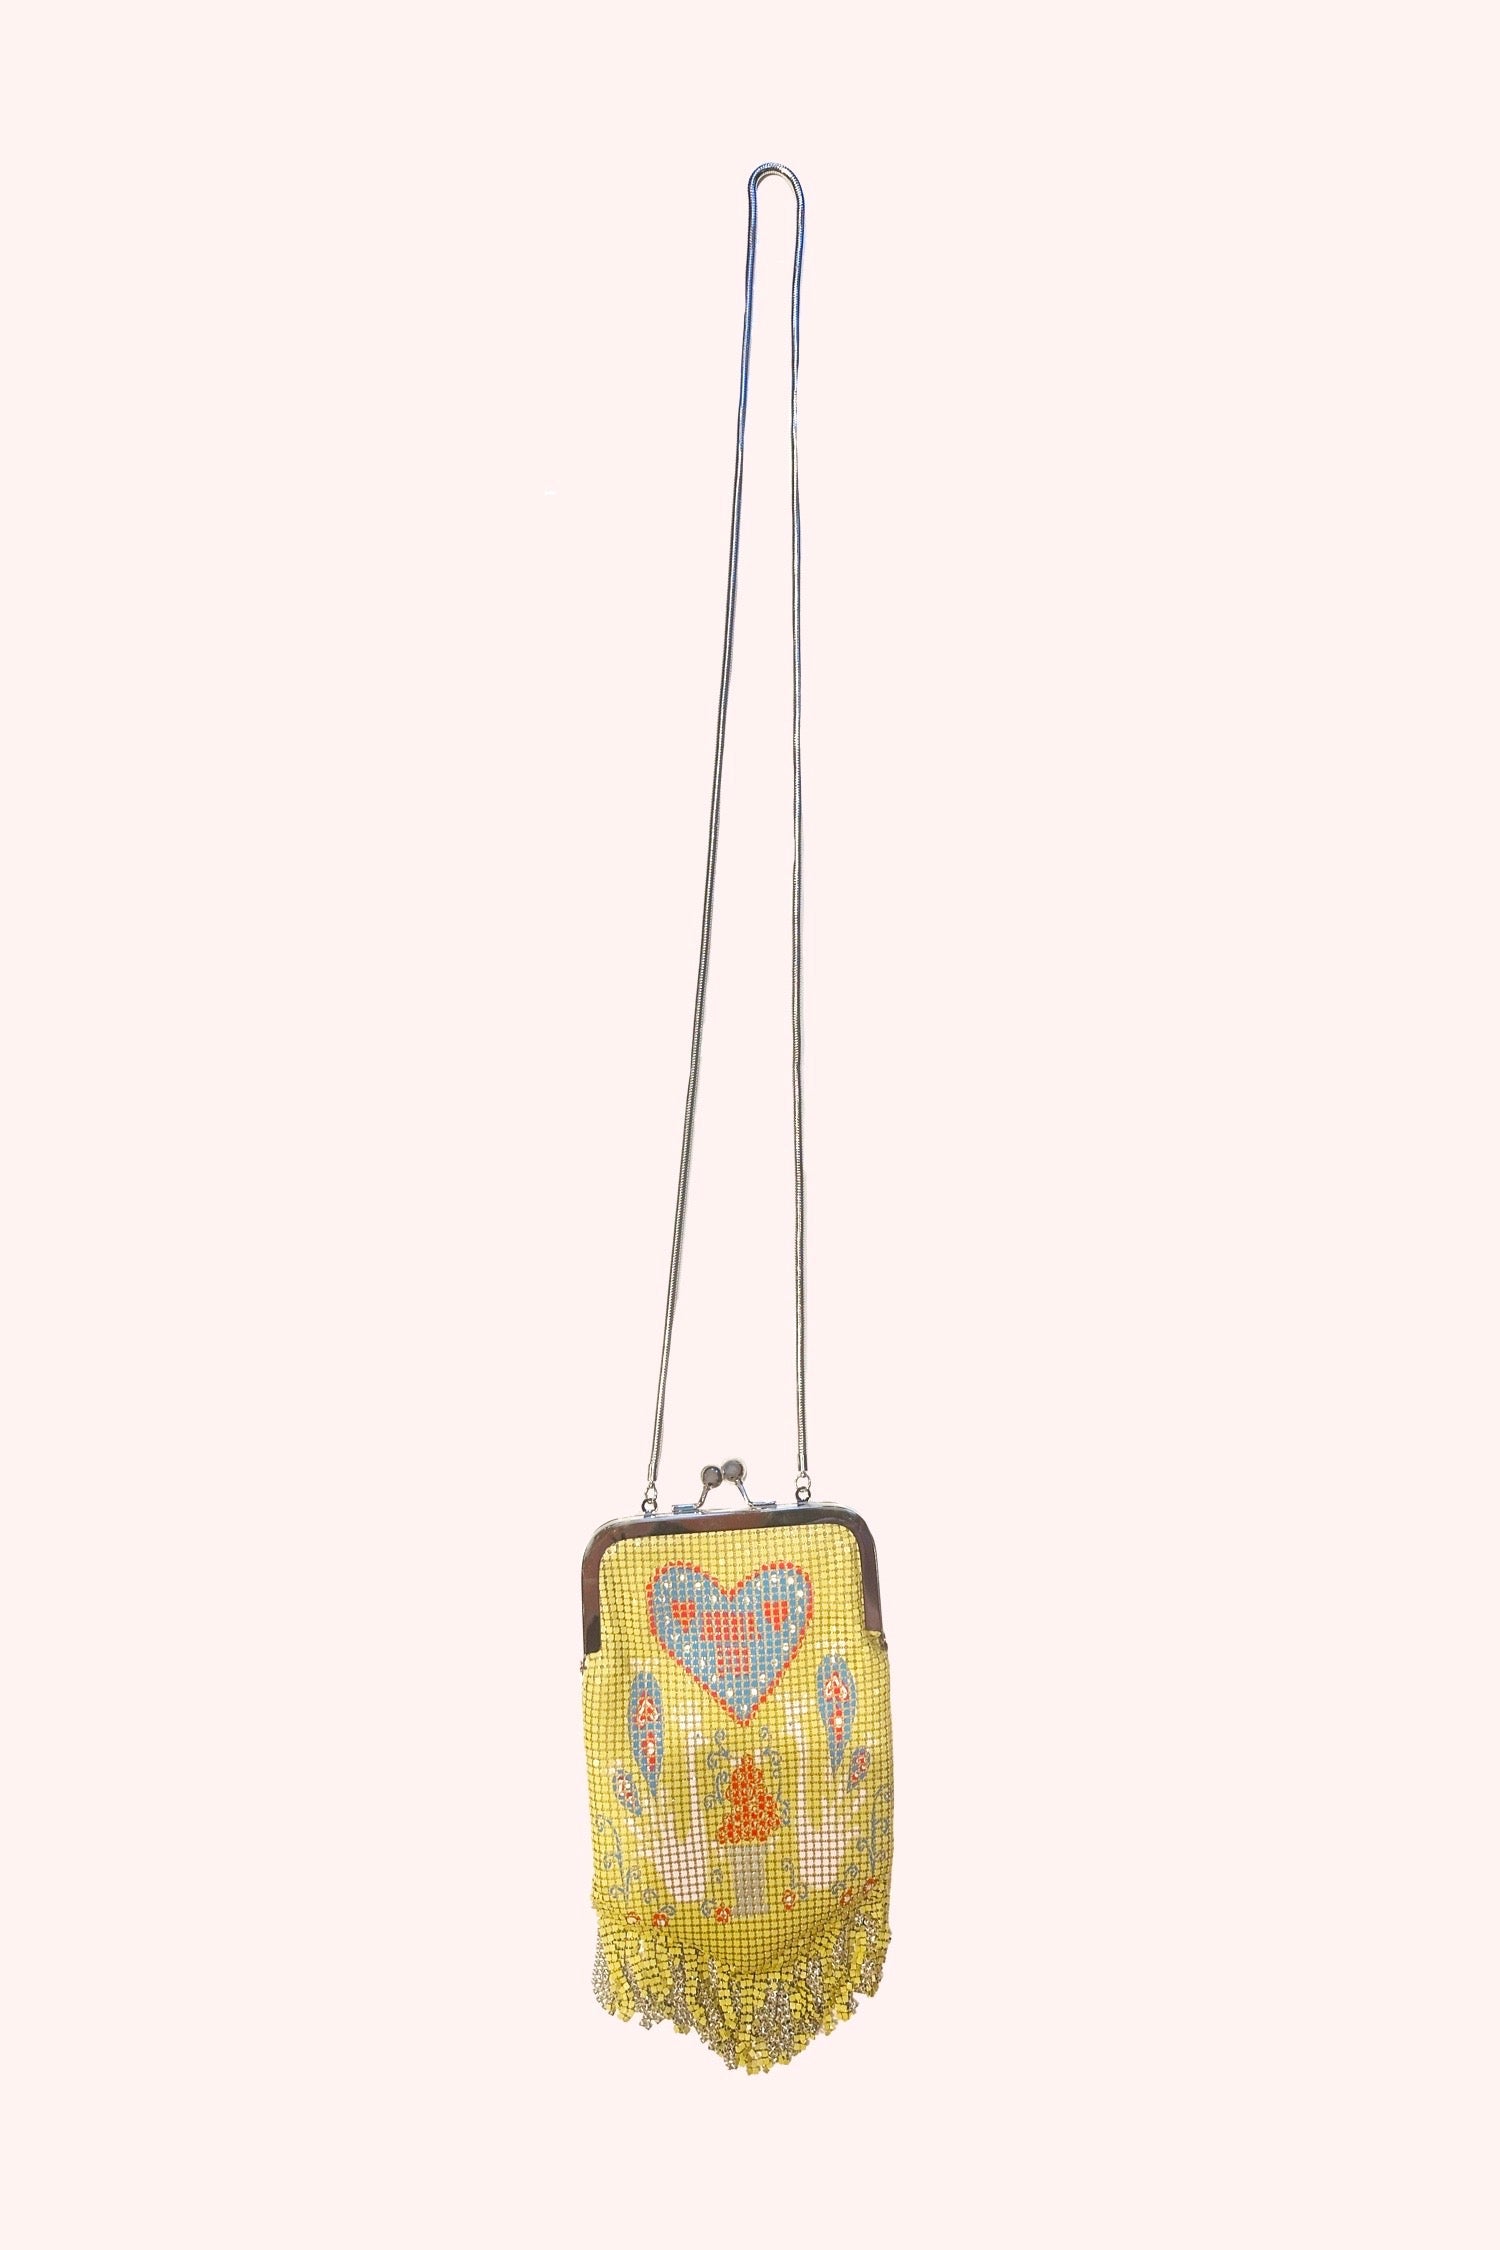 NWT Anna Sui Fern Mist Muti Crossbody Bag Purse | Crossbody bag, Purses and  bags, Purse styles